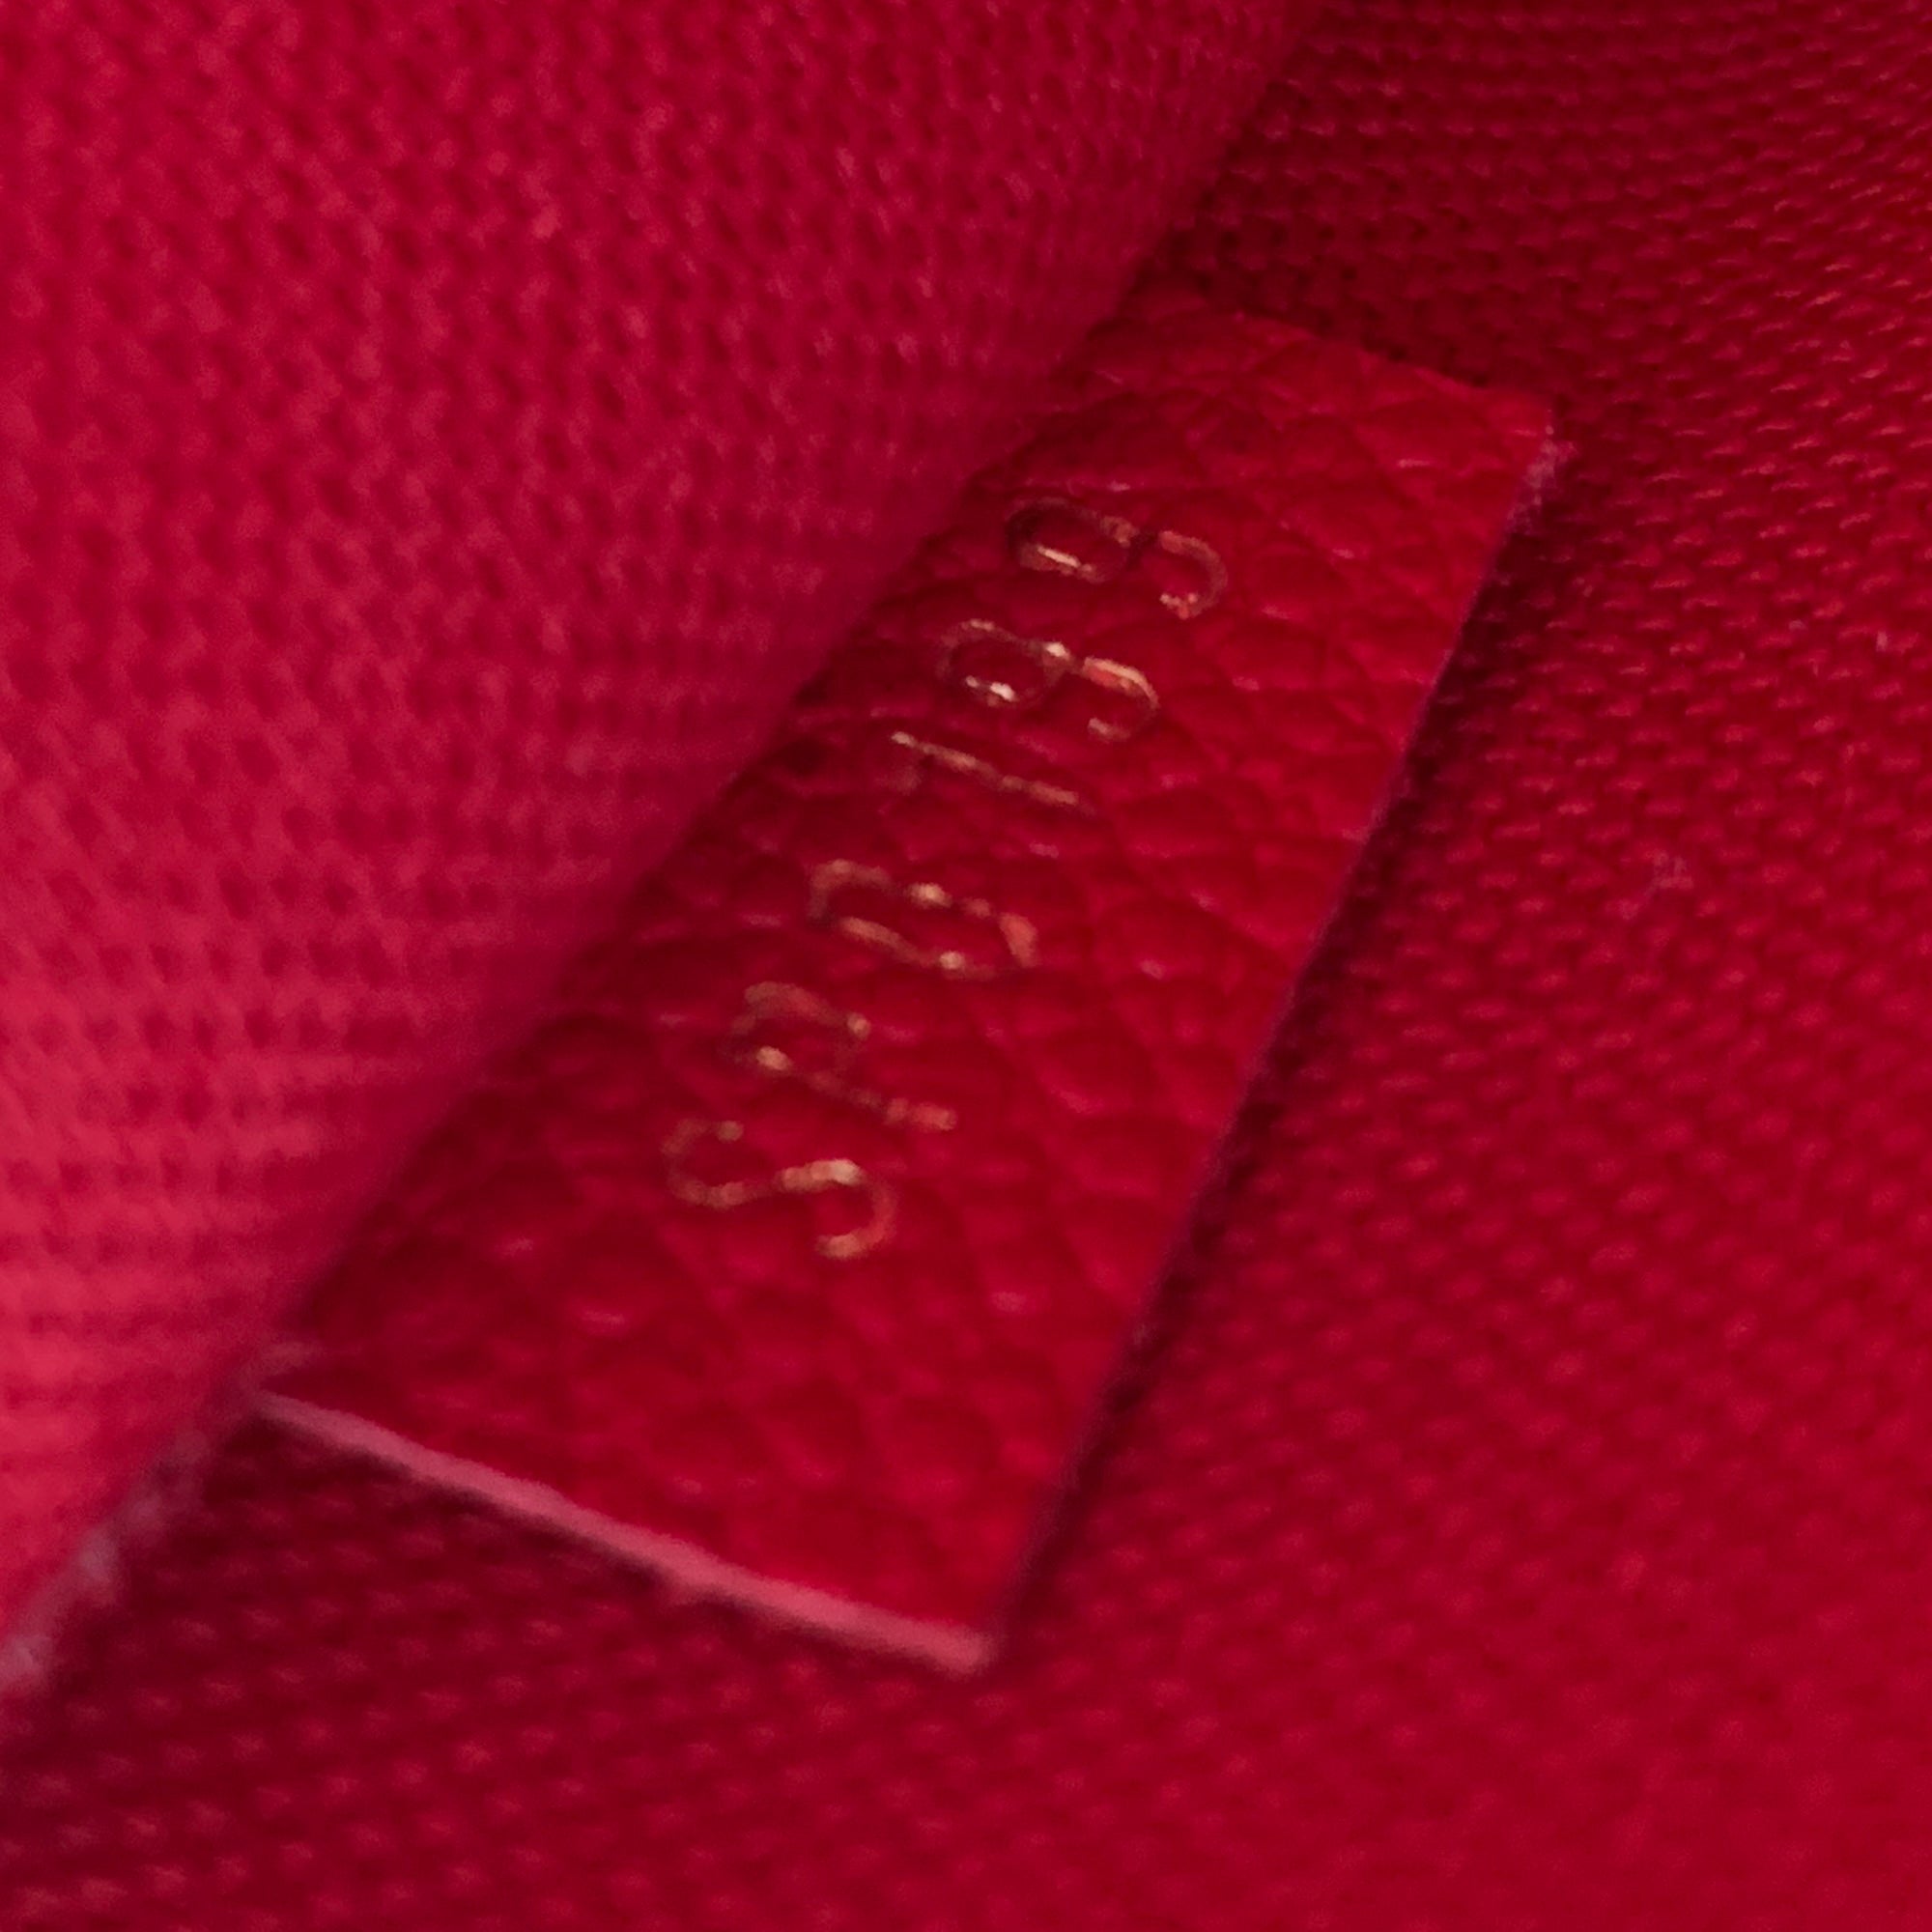 NTWRK - Preloved Louis Vuitton Felicie Pochette Red Empreinte Leather Ba